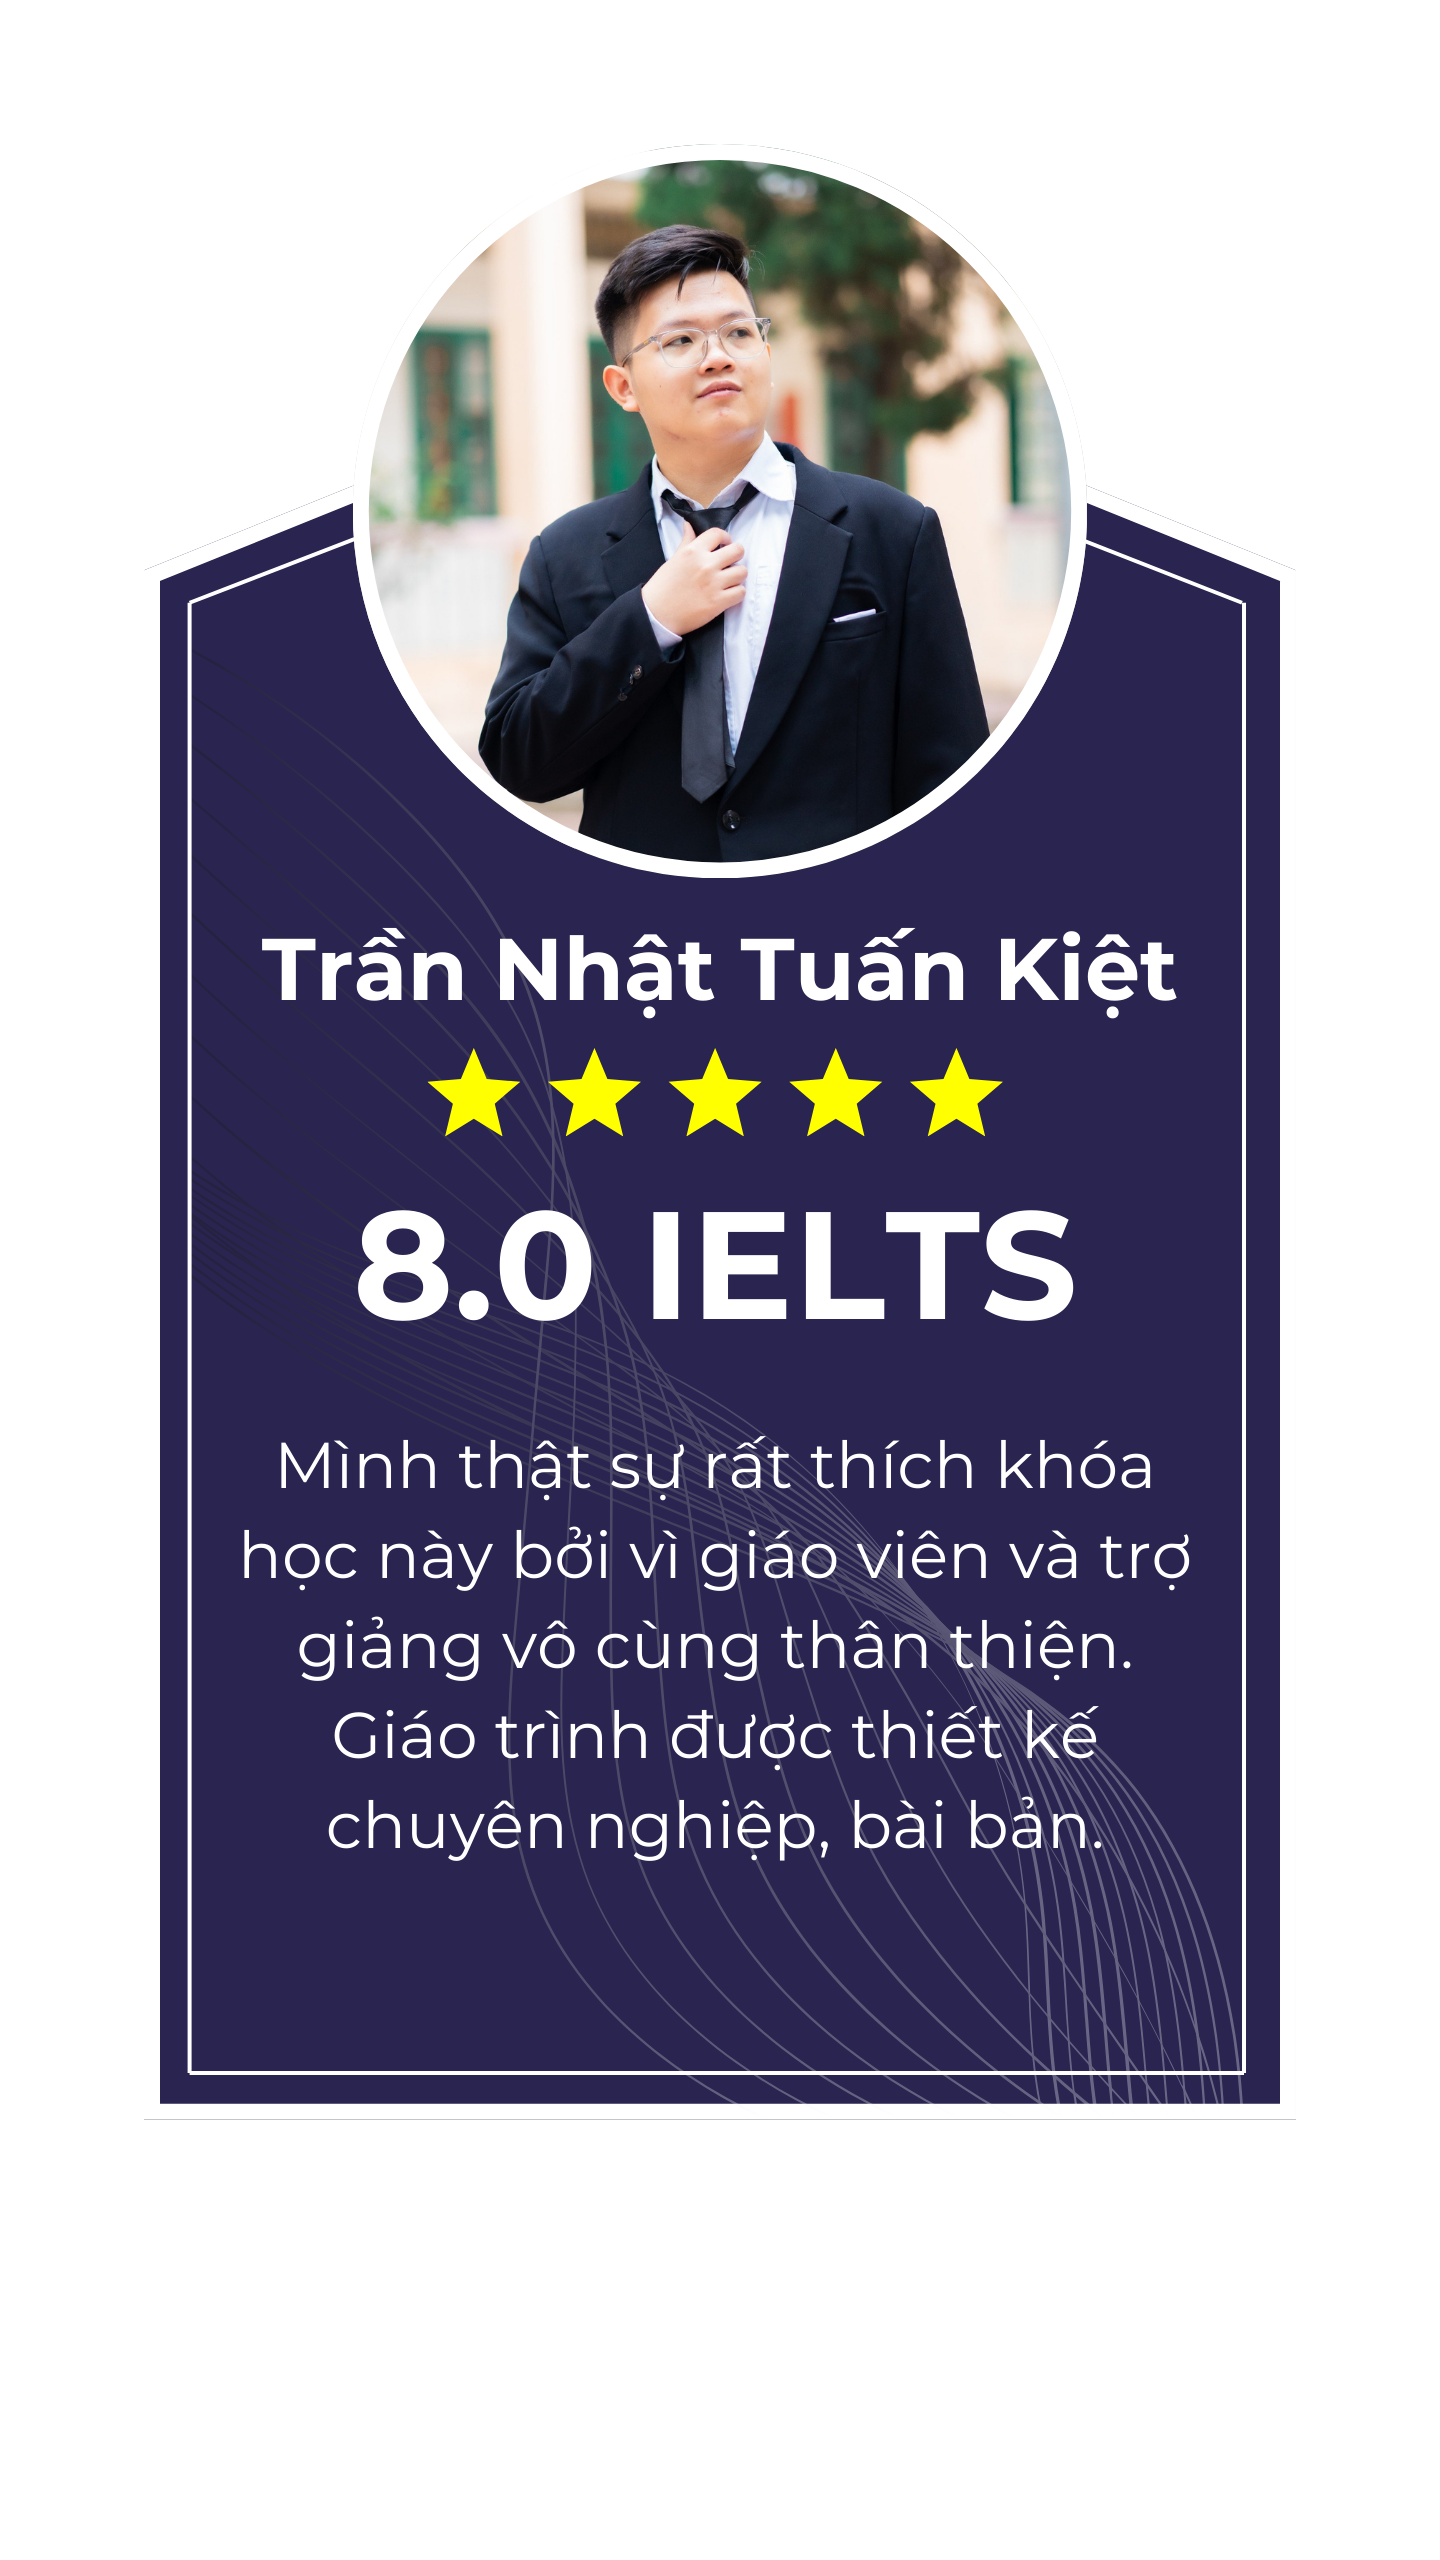 Trần Nhật Tuấn Kiệt - Trường THPT Xuân Đỉnh Hà Nội